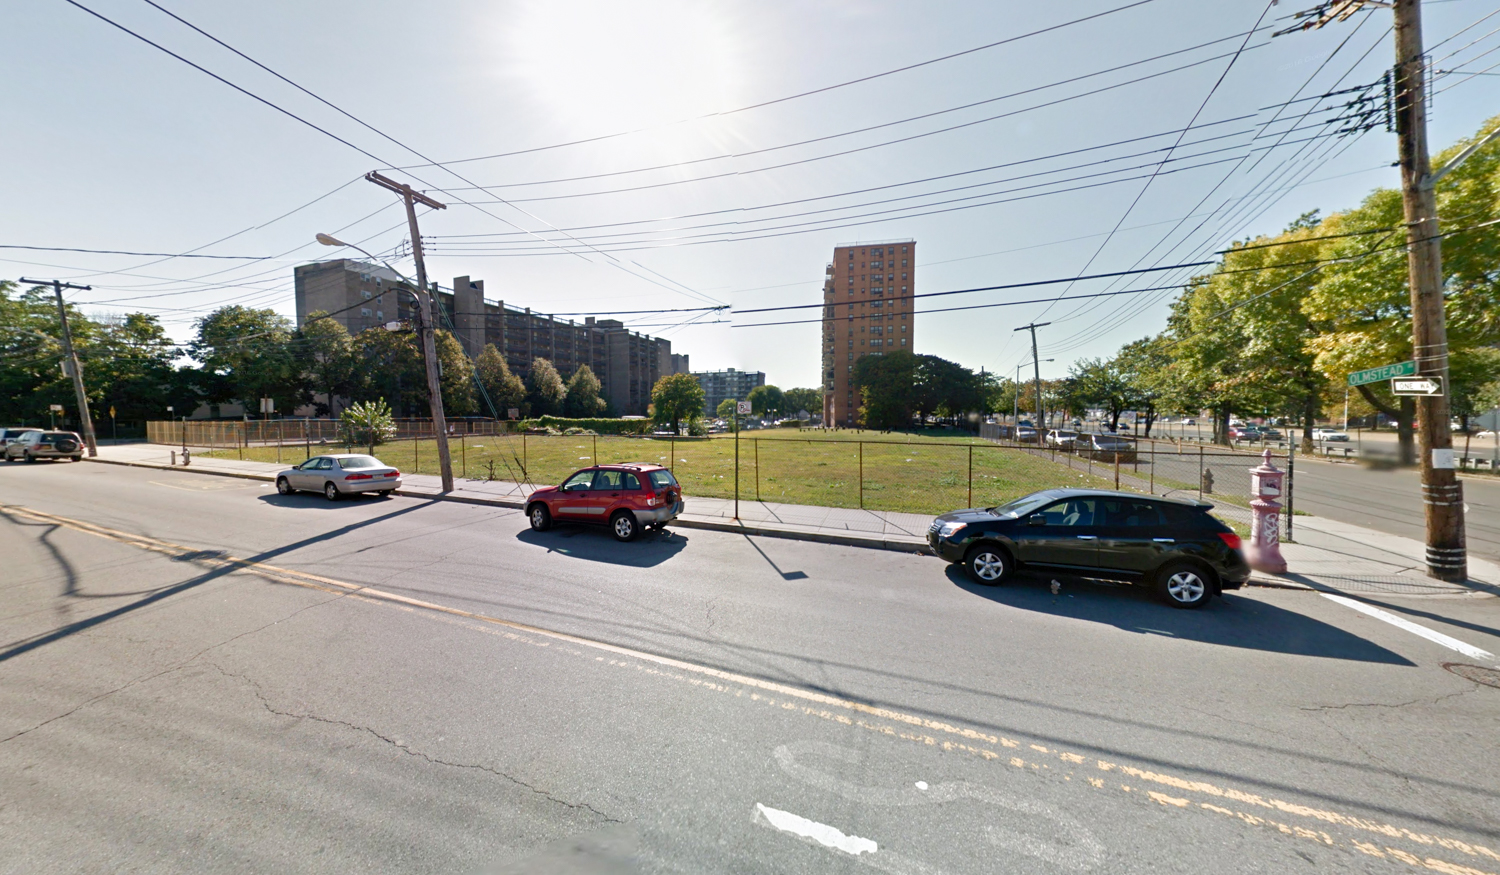 951 Olmstead Avenue, via Google Maps